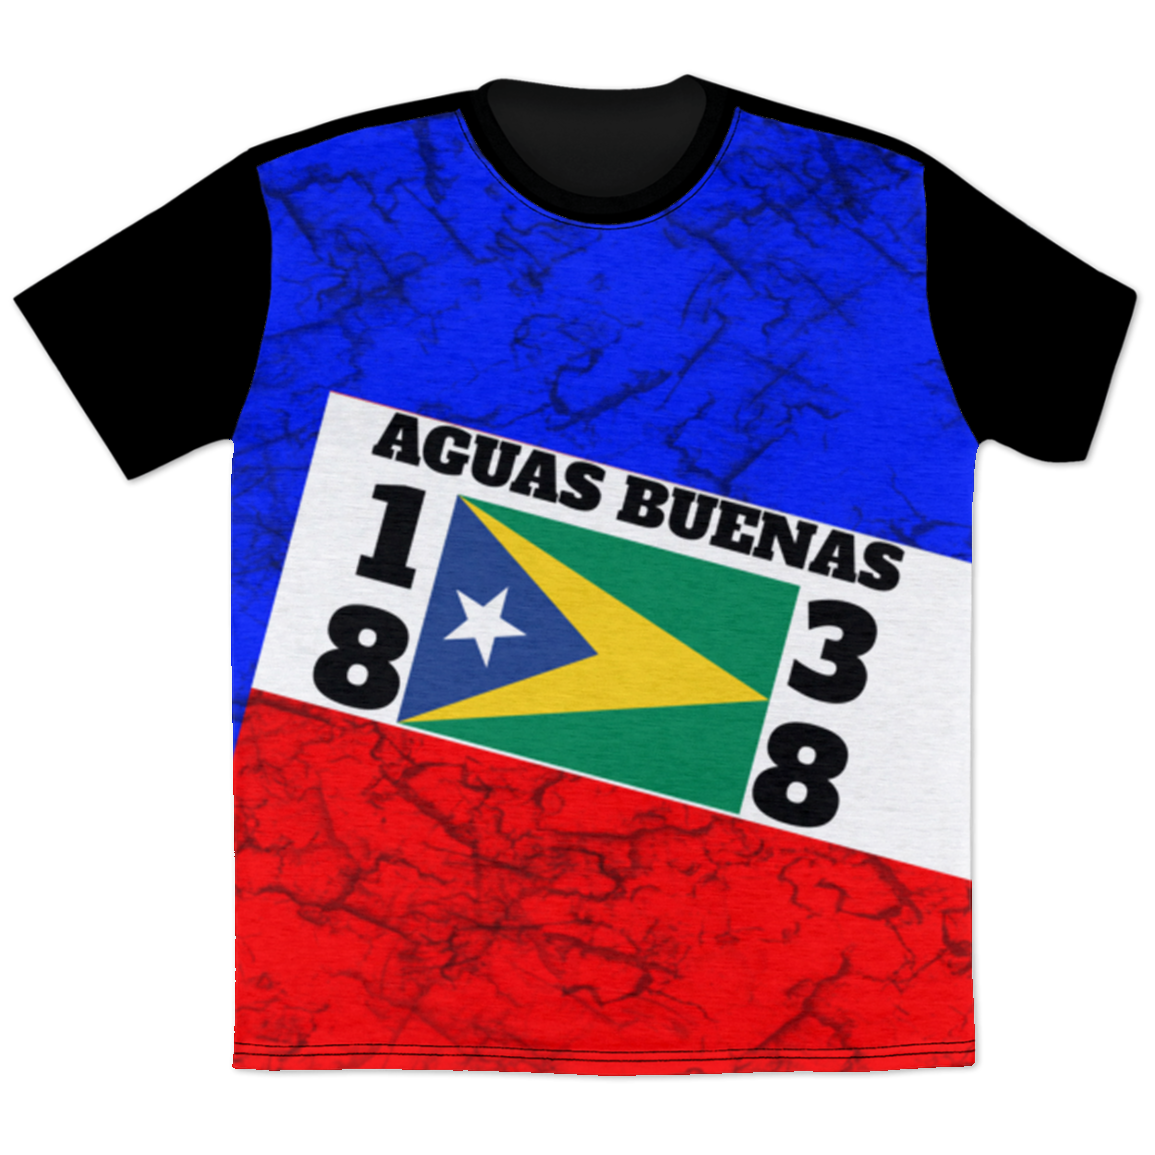 Aguas Buenas T-Shirt - Puerto Rican Pride